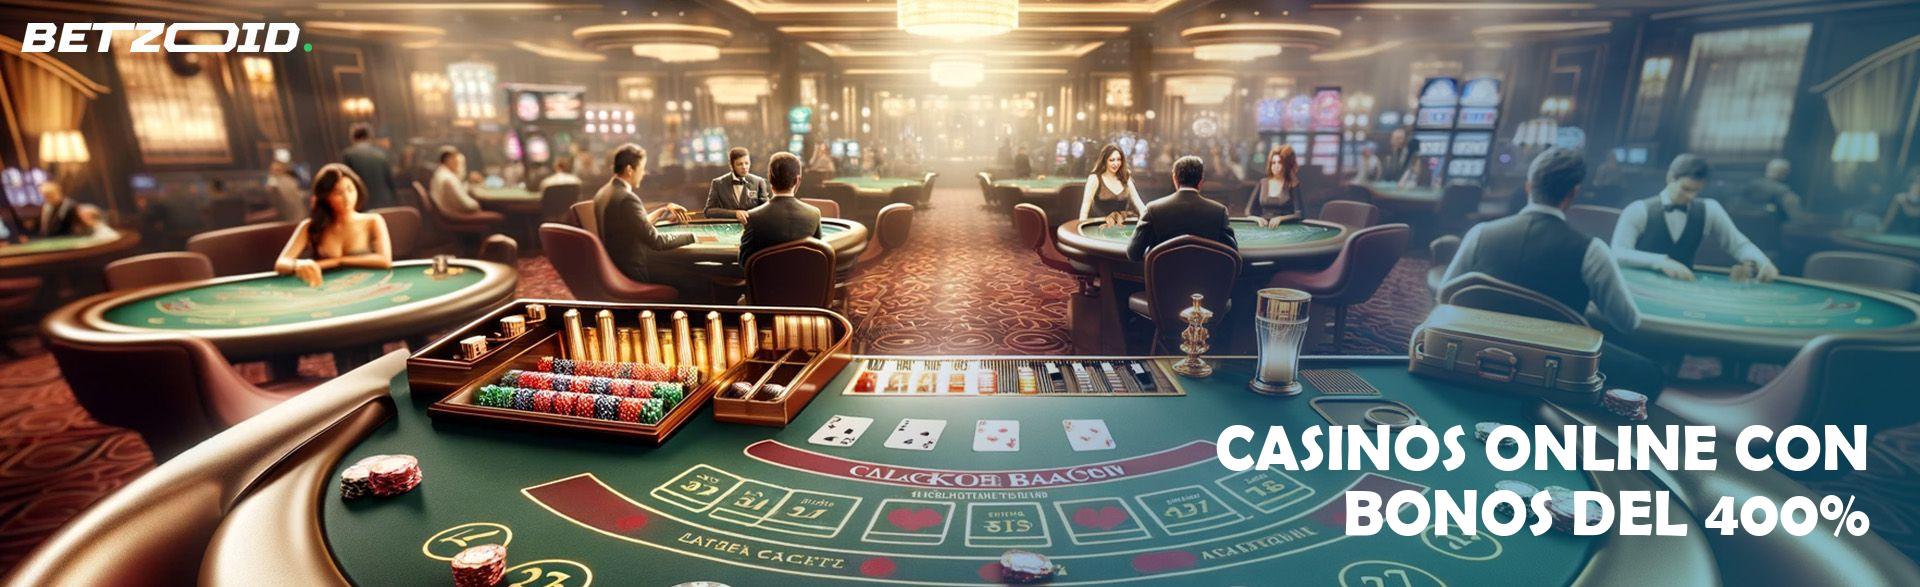 Casinos Online con Bonos Del 400%.